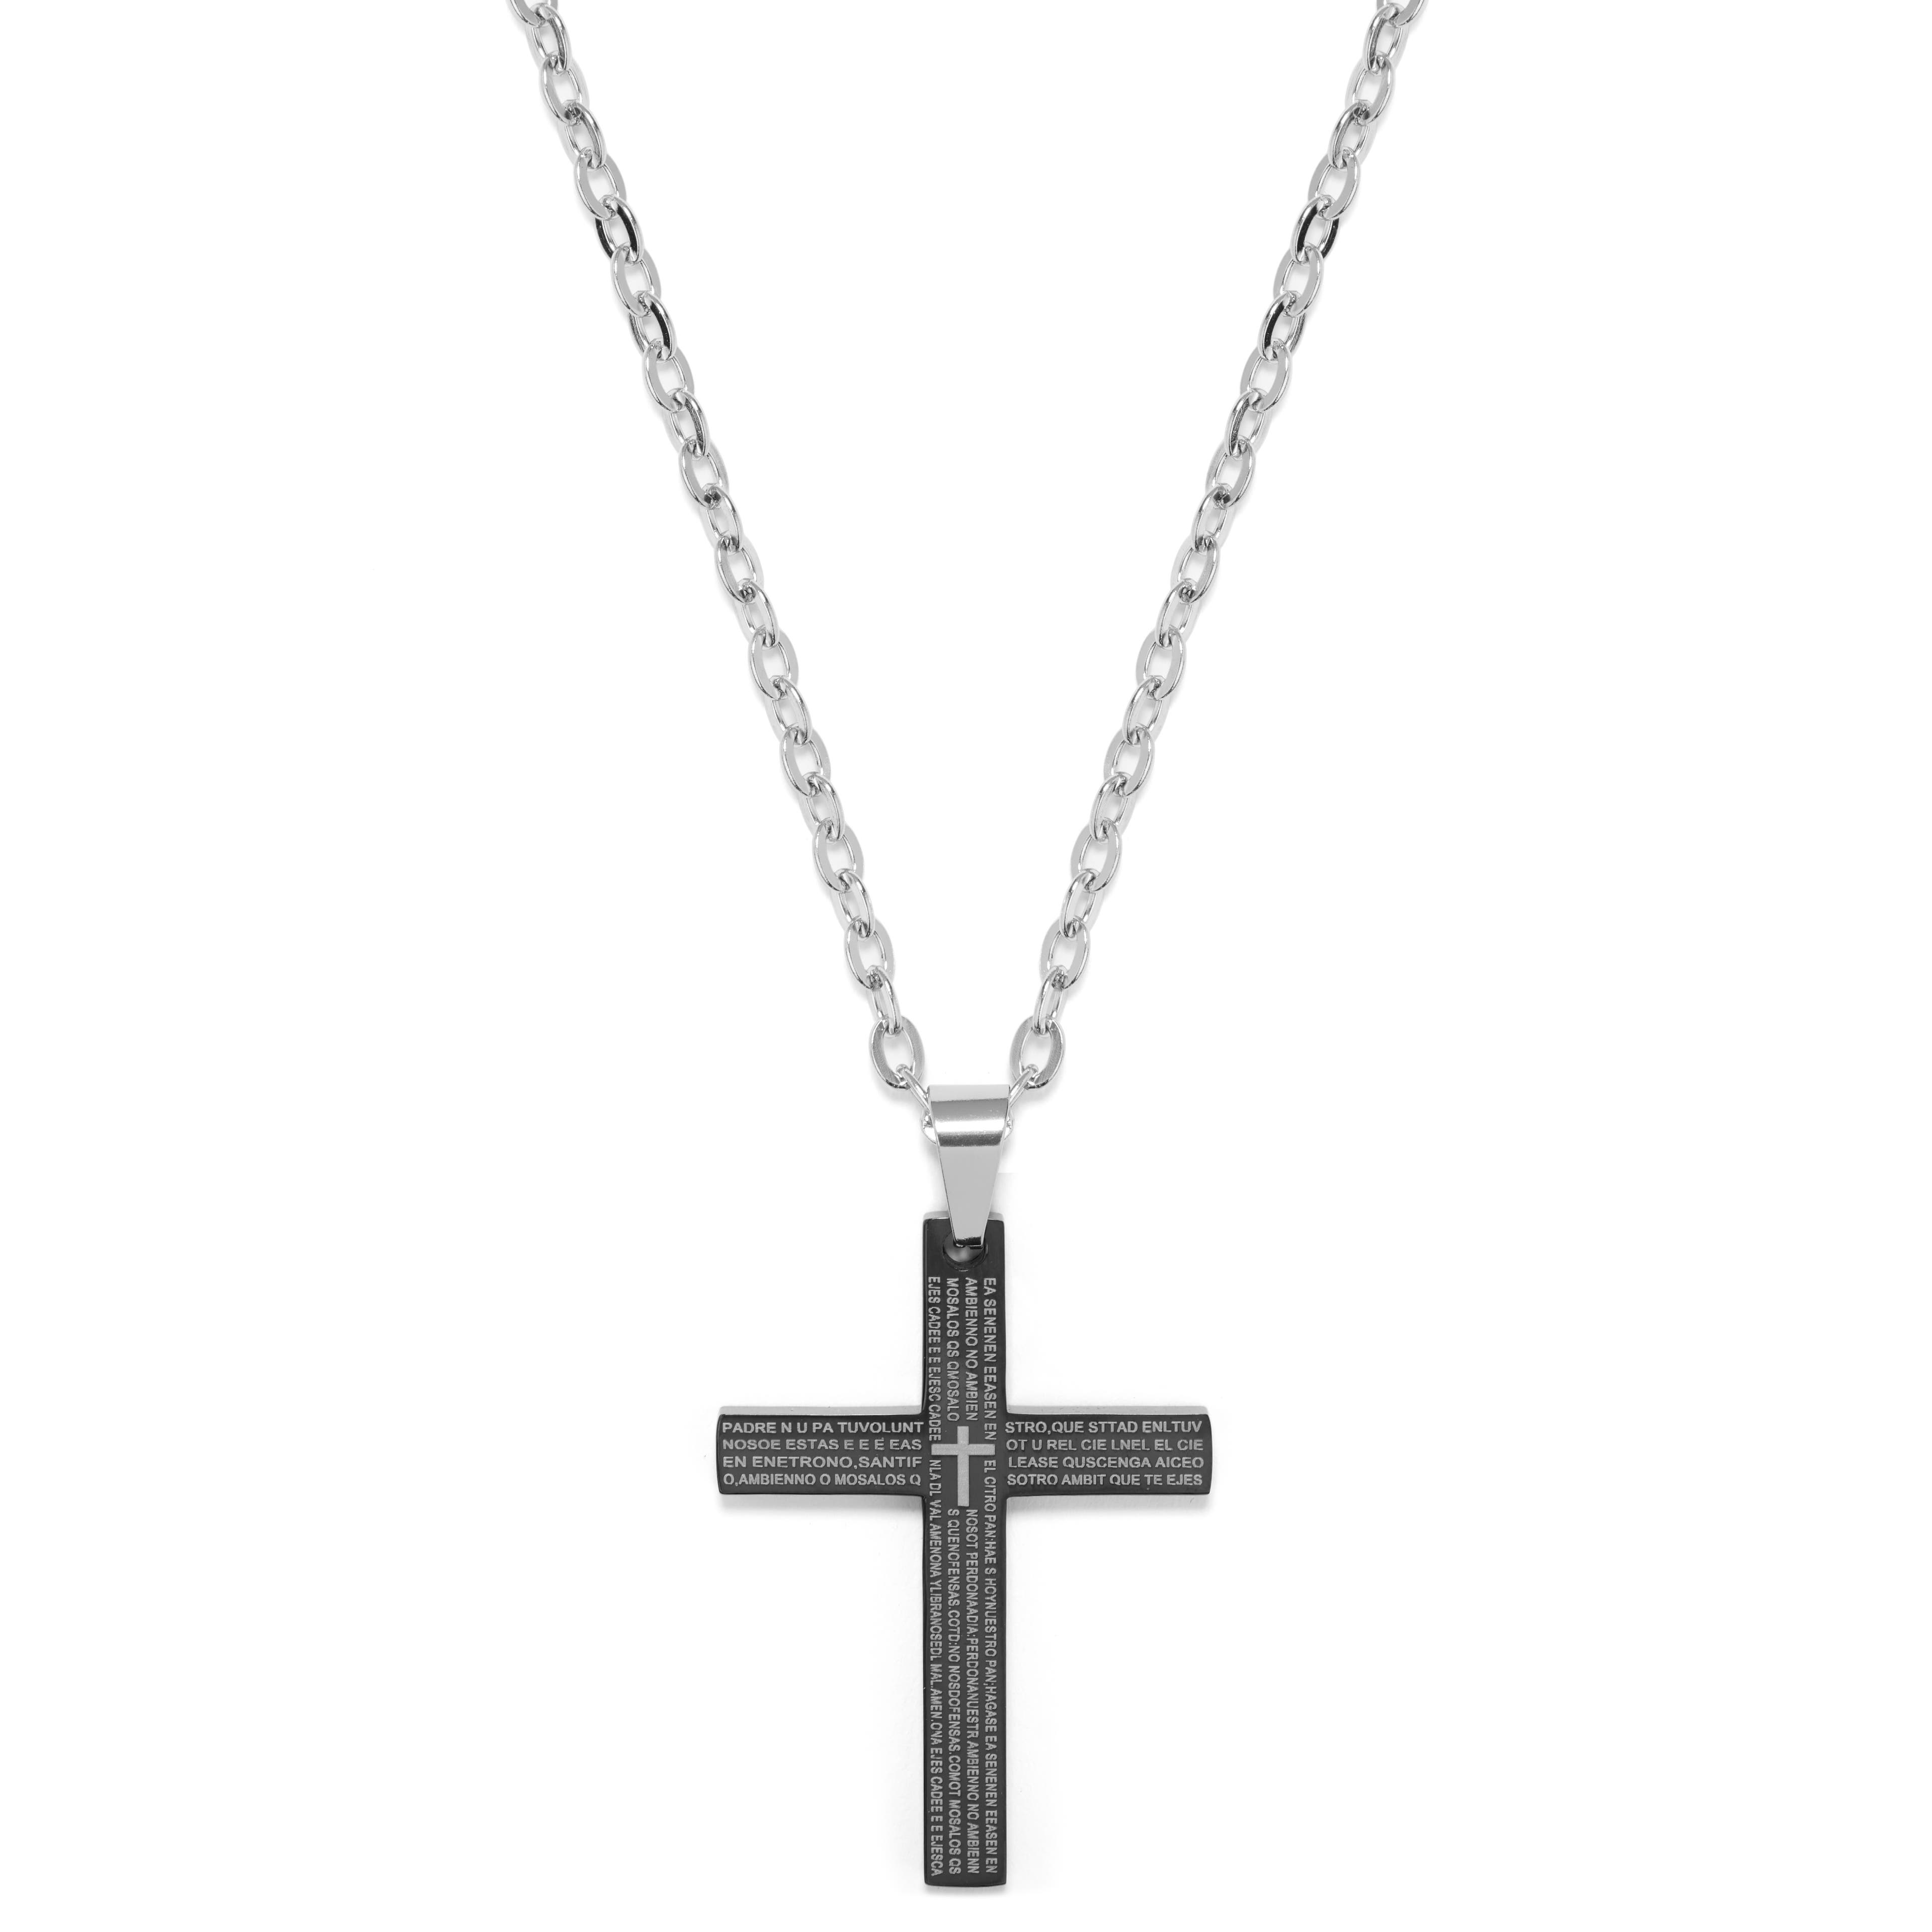 Petite croix noire avec chaine en acier inoxydable